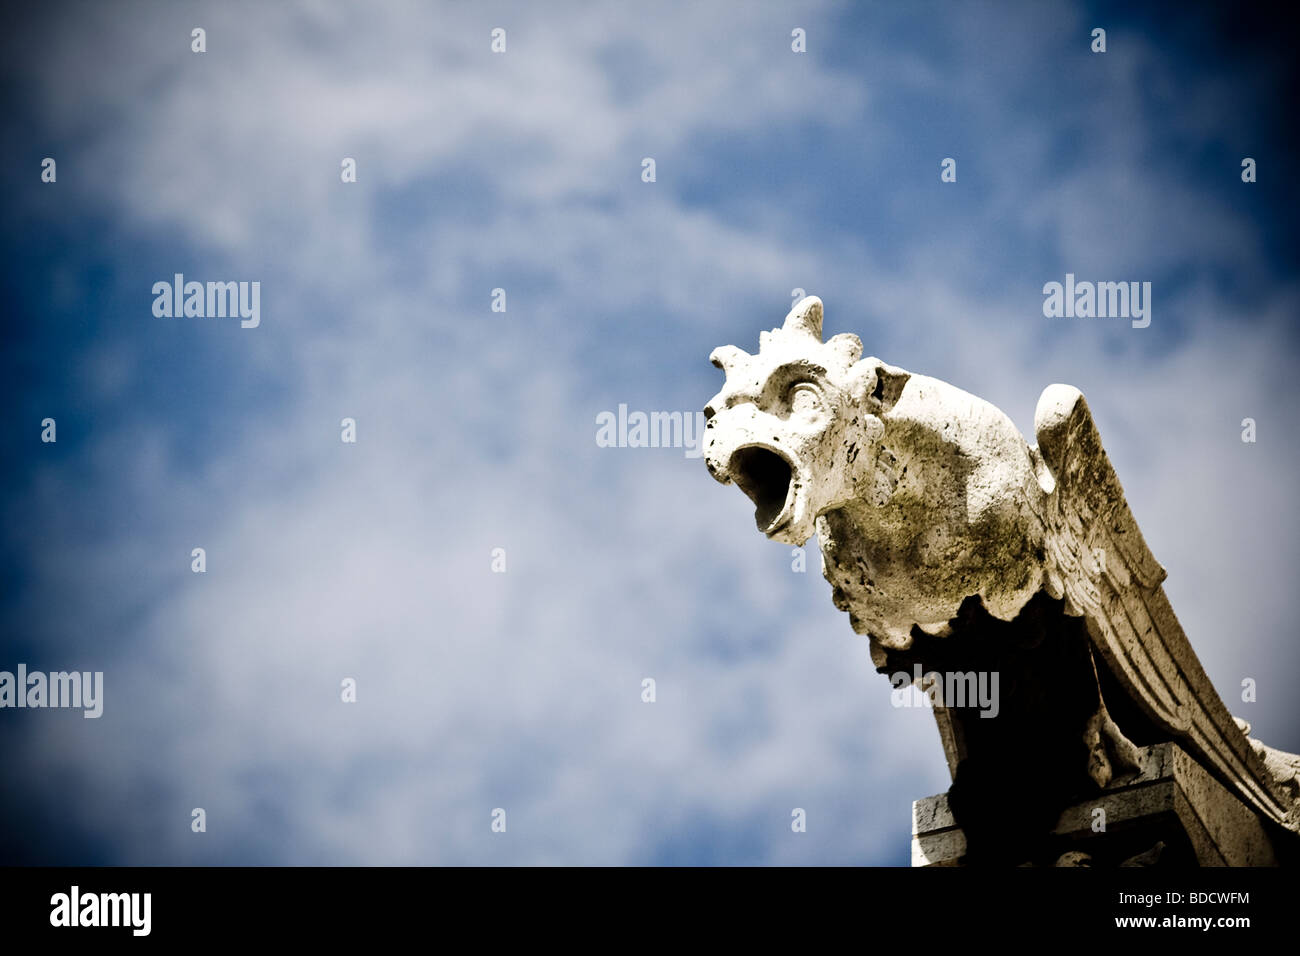 Pierre pâle contrefort de l'aigle contre un ciel bleu avec une fine couche de nuages blancs Banque D'Images